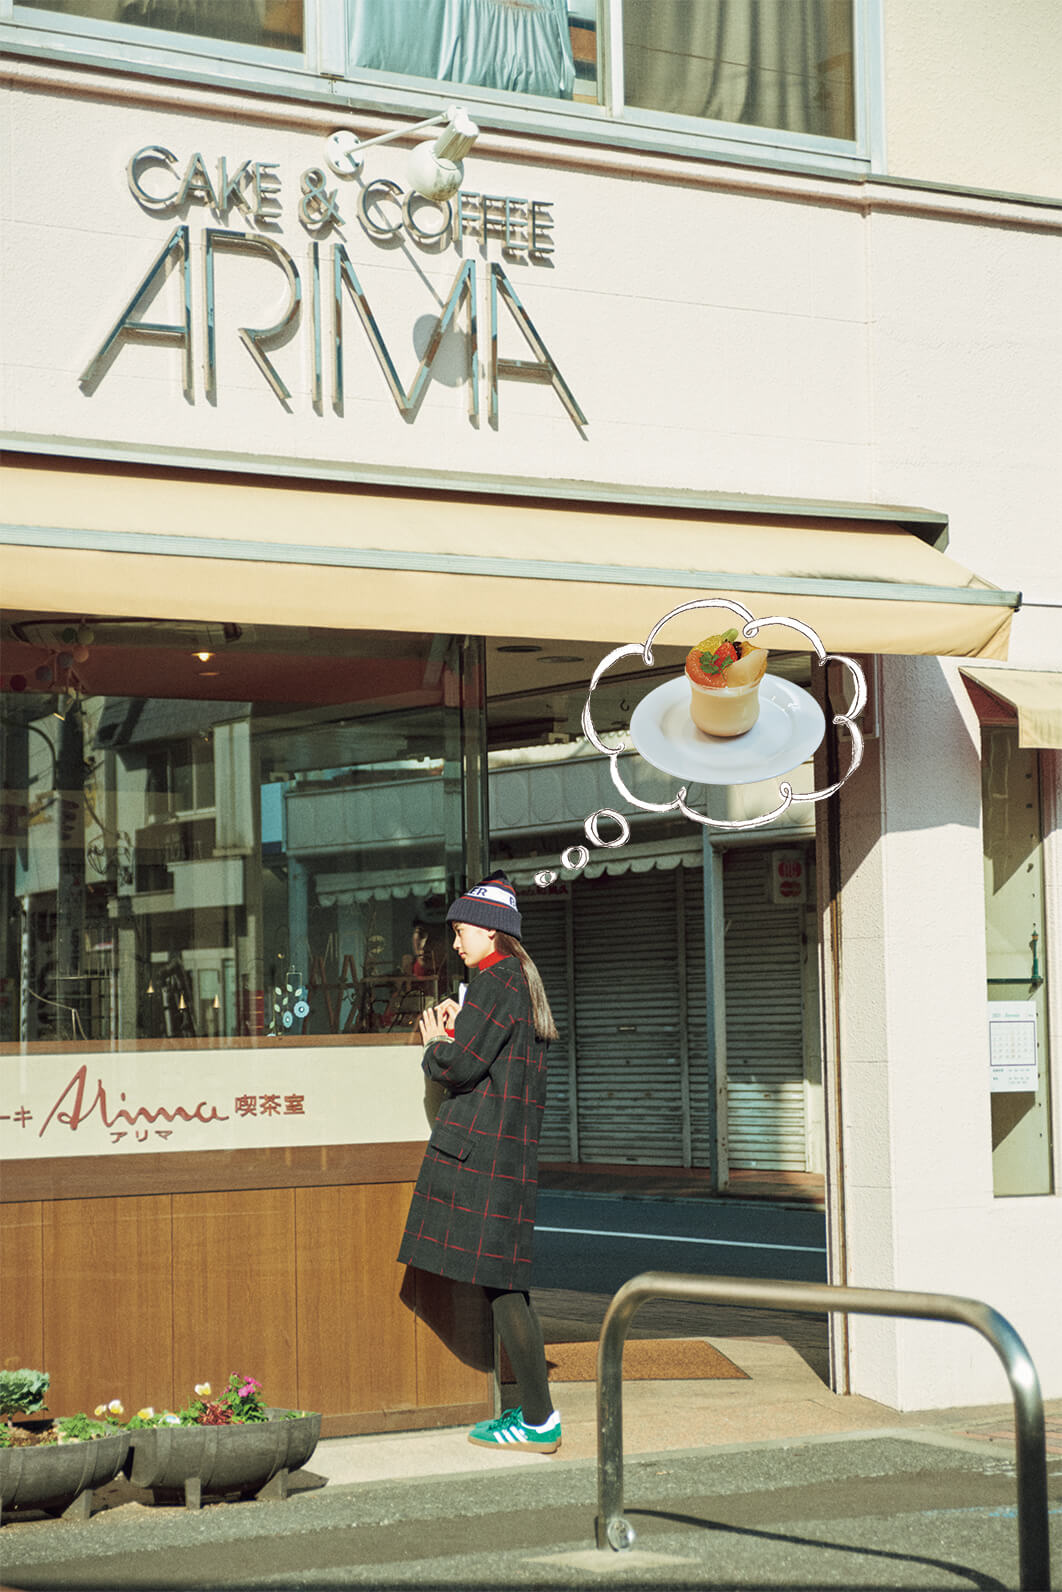 アリマ洋菓子店